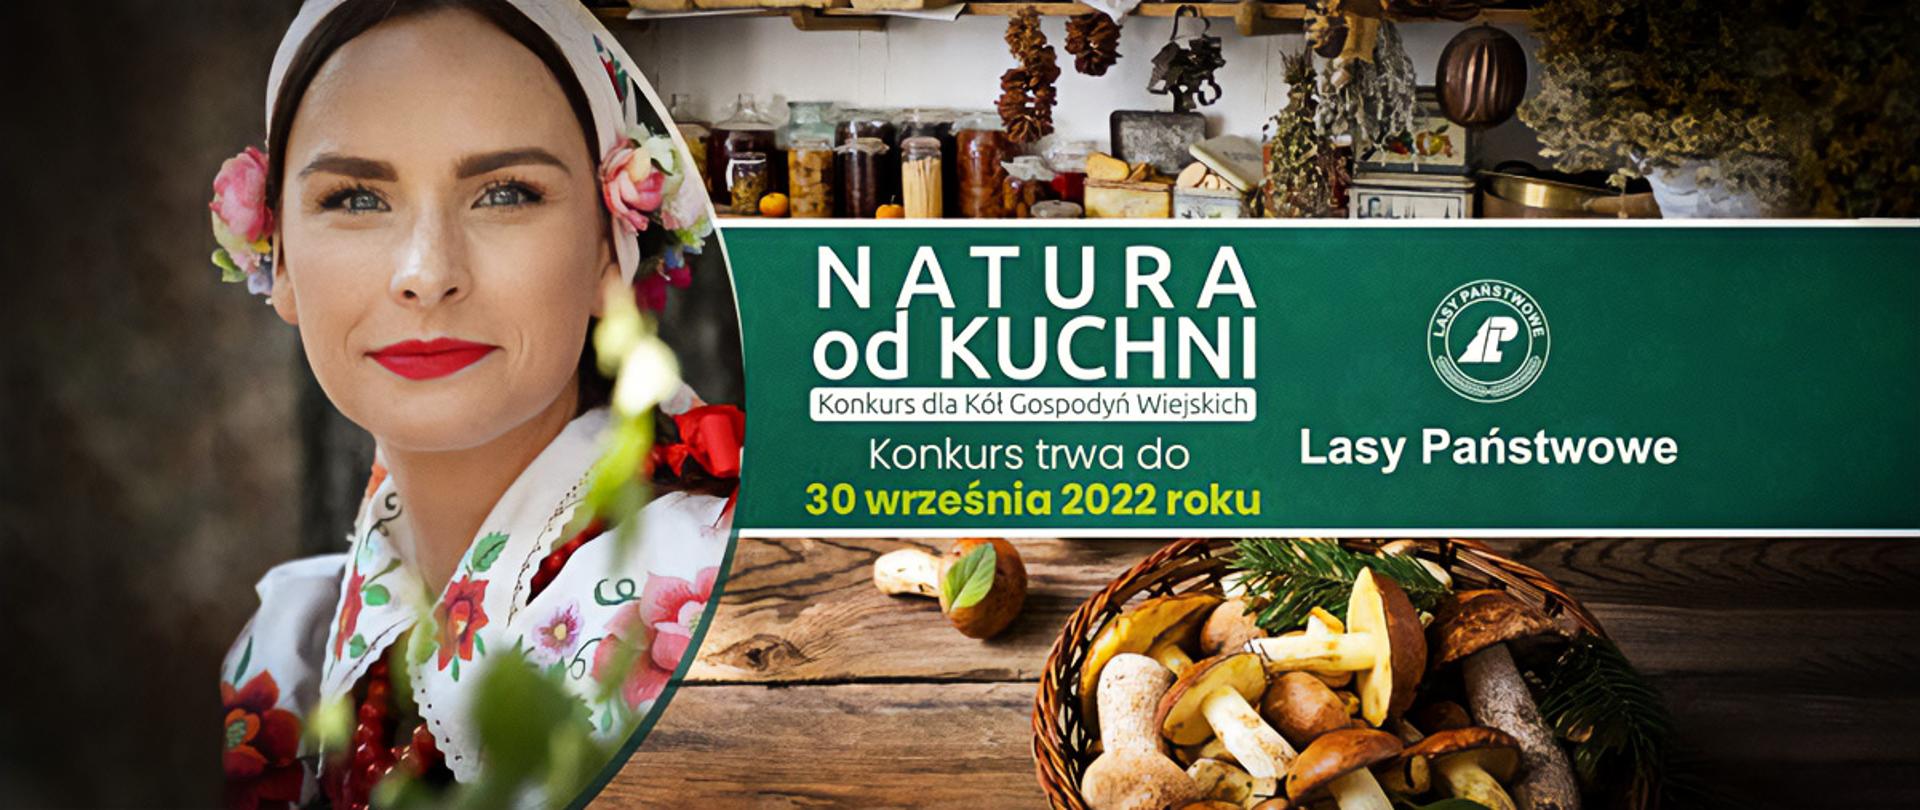 Ogólnopolski konkurs dla kół gospodyń wiejskich Natura od Kuchni organizowany przez Lasy Państwowe